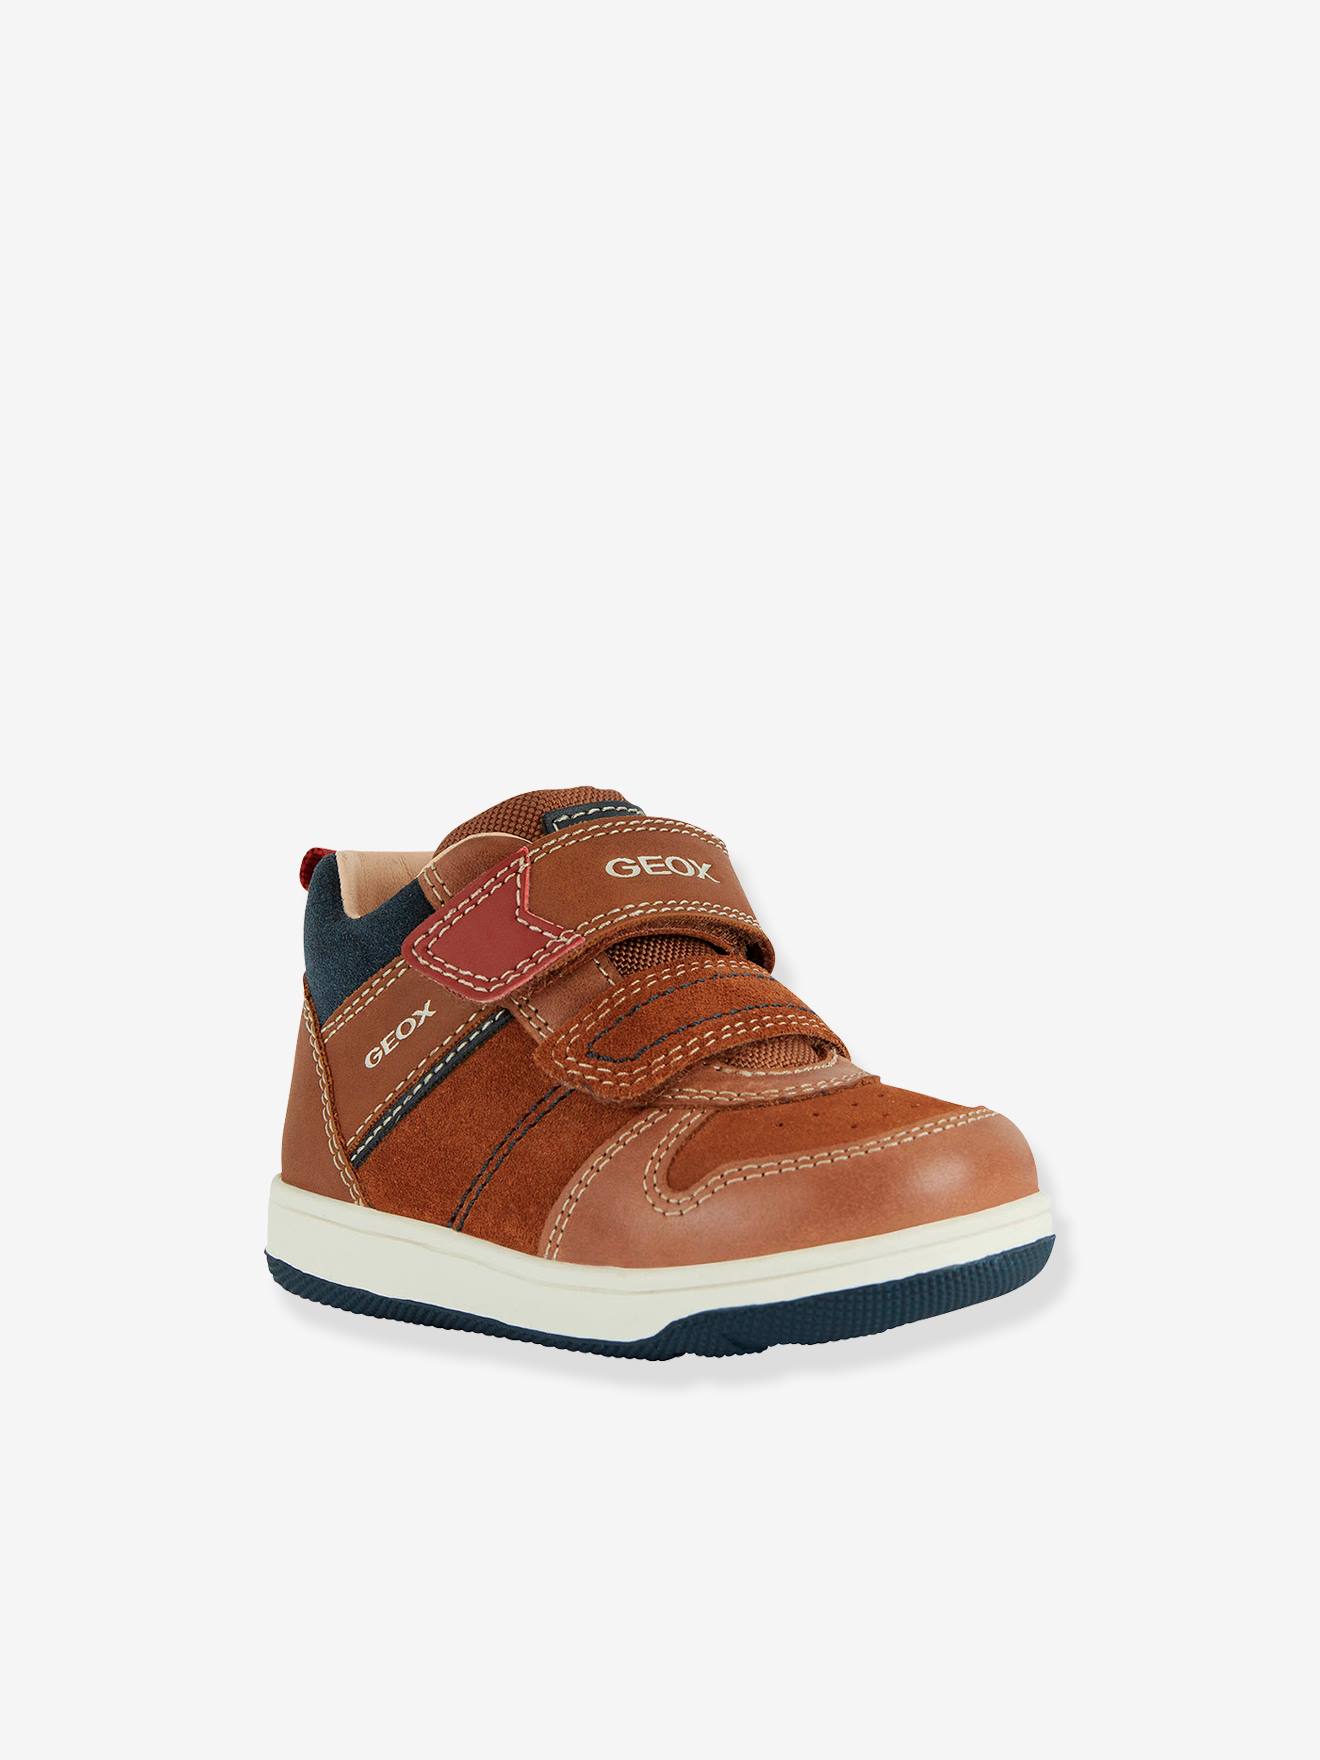 GEOX New Flick Sneakers Kinderen - Light Brown / Navy - EU 23